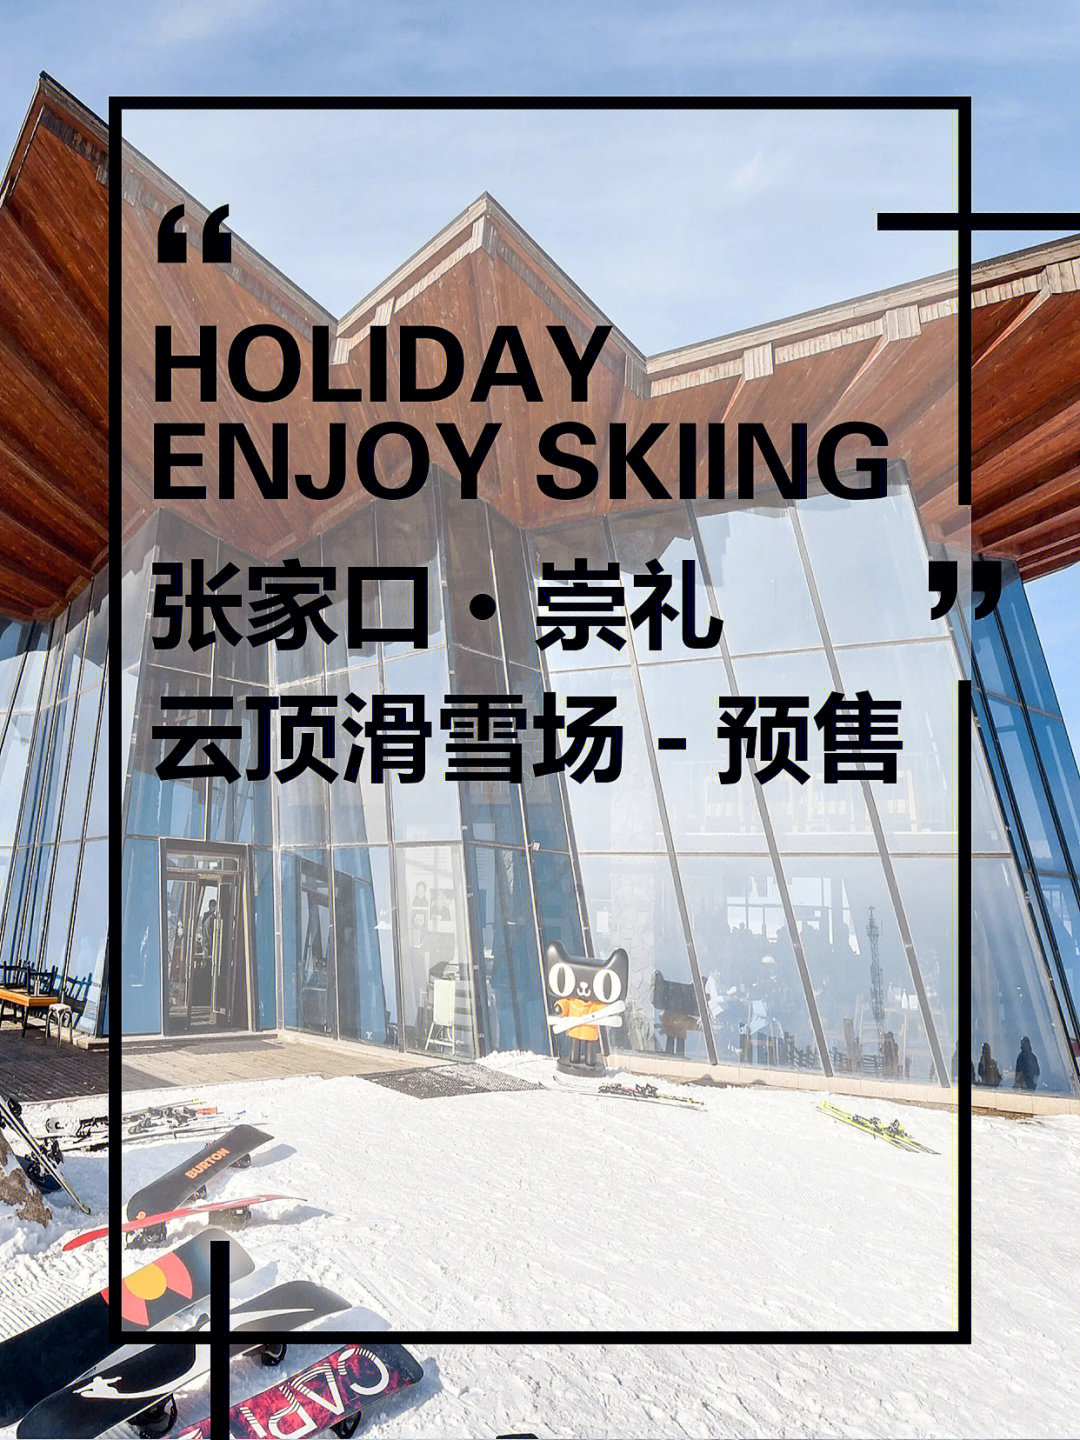 ing·76崇礼云顶滑雪场粉雪季预售开始啦90云顶大酒店住滑套餐:一